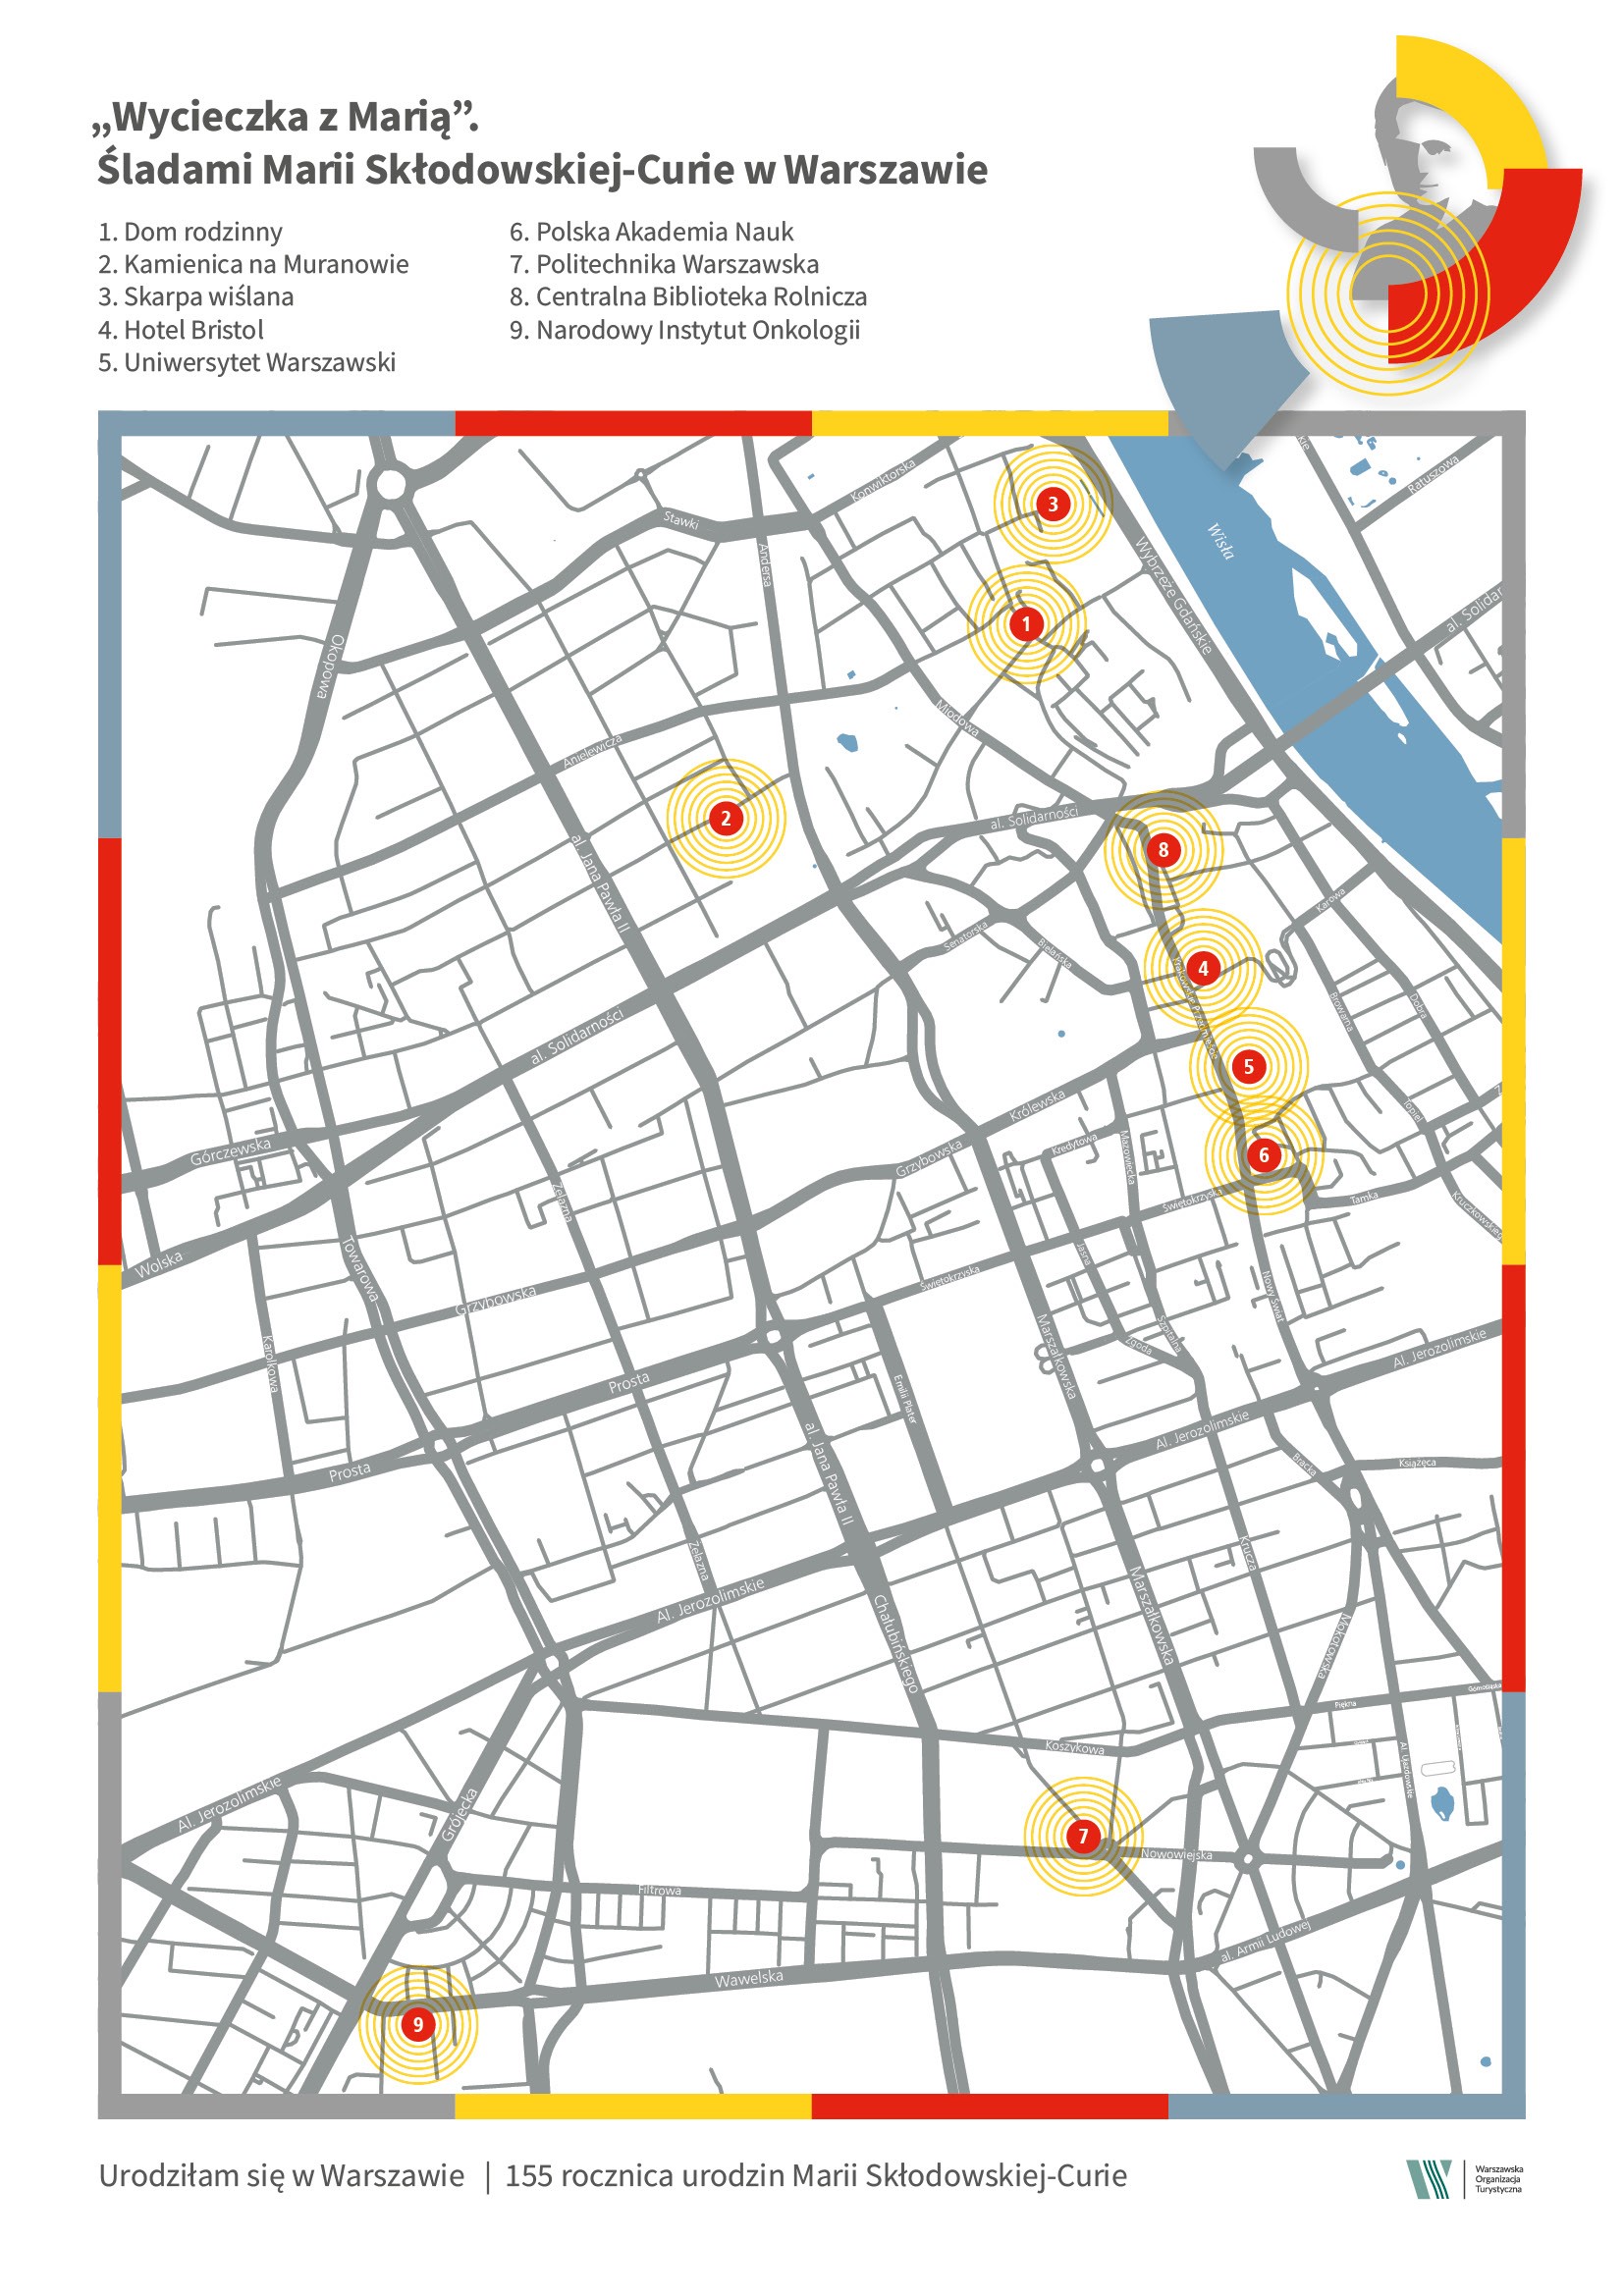 Hotele historyczne w Warszawie - mapa